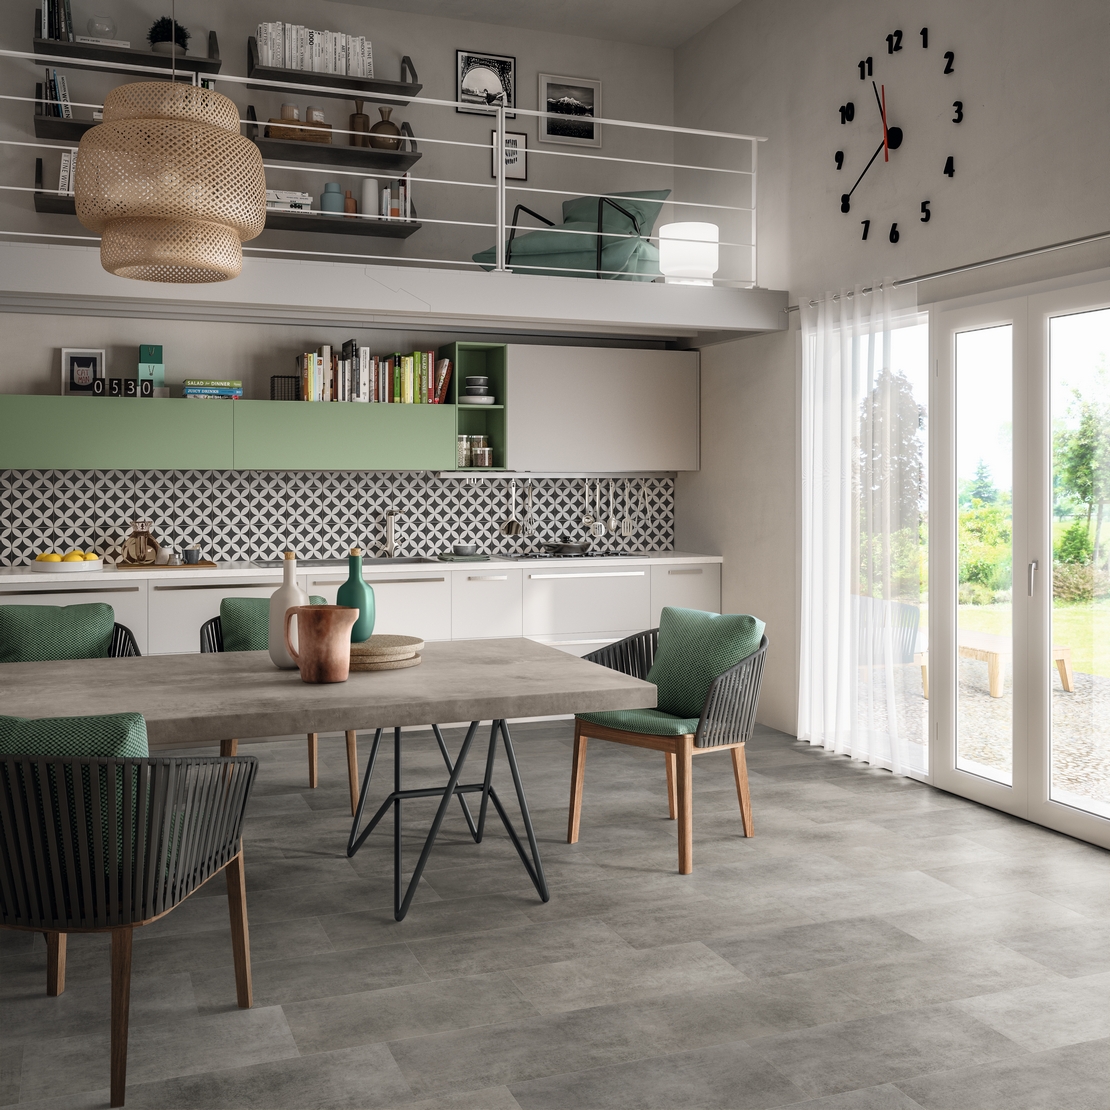 Cucina moderna lineare open space: effetto cemento e toni del verde per un tocco industriale - Ambienti Iperceramica